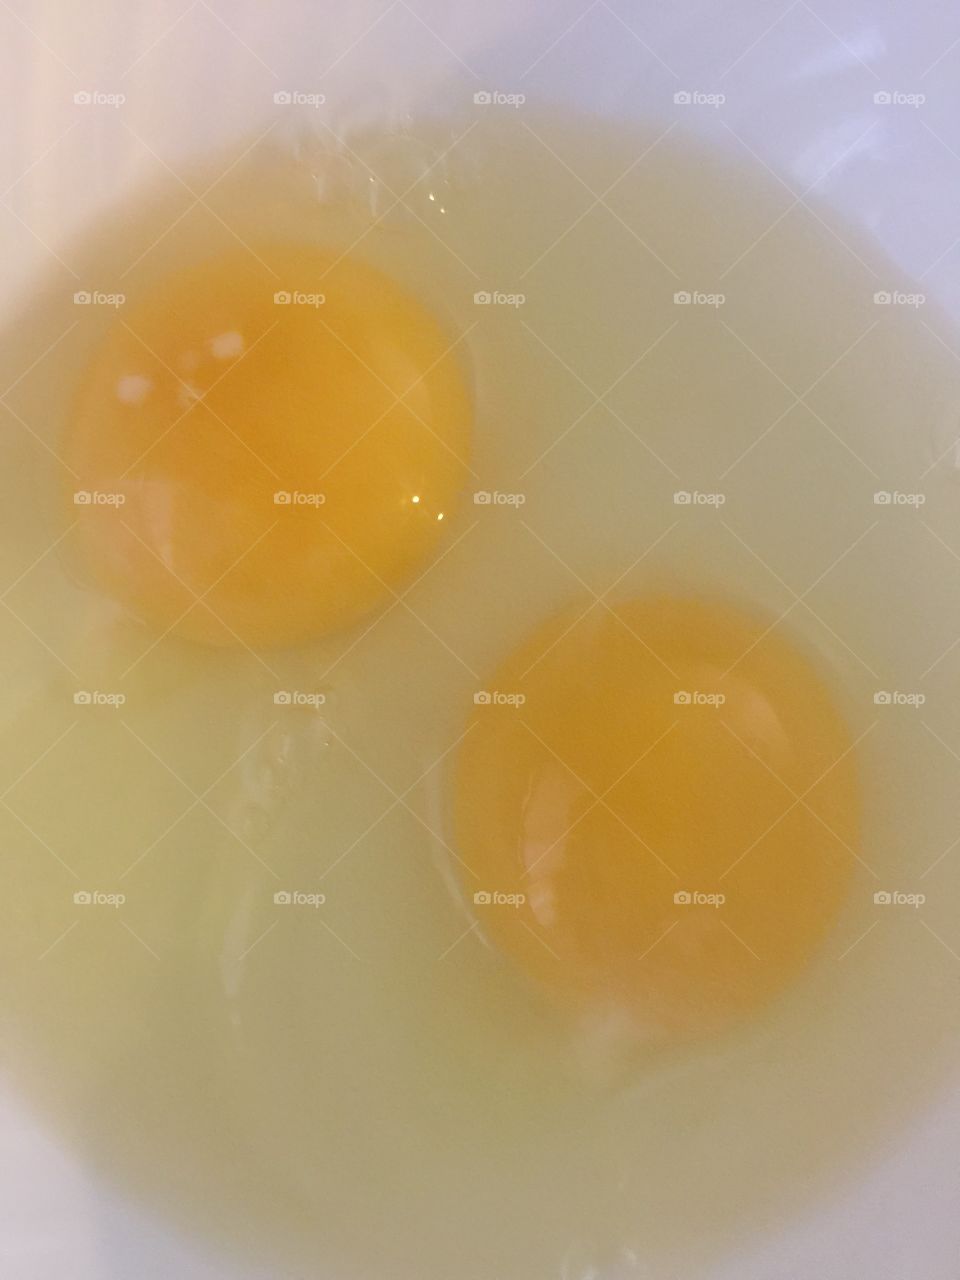 Good Morning eggs 